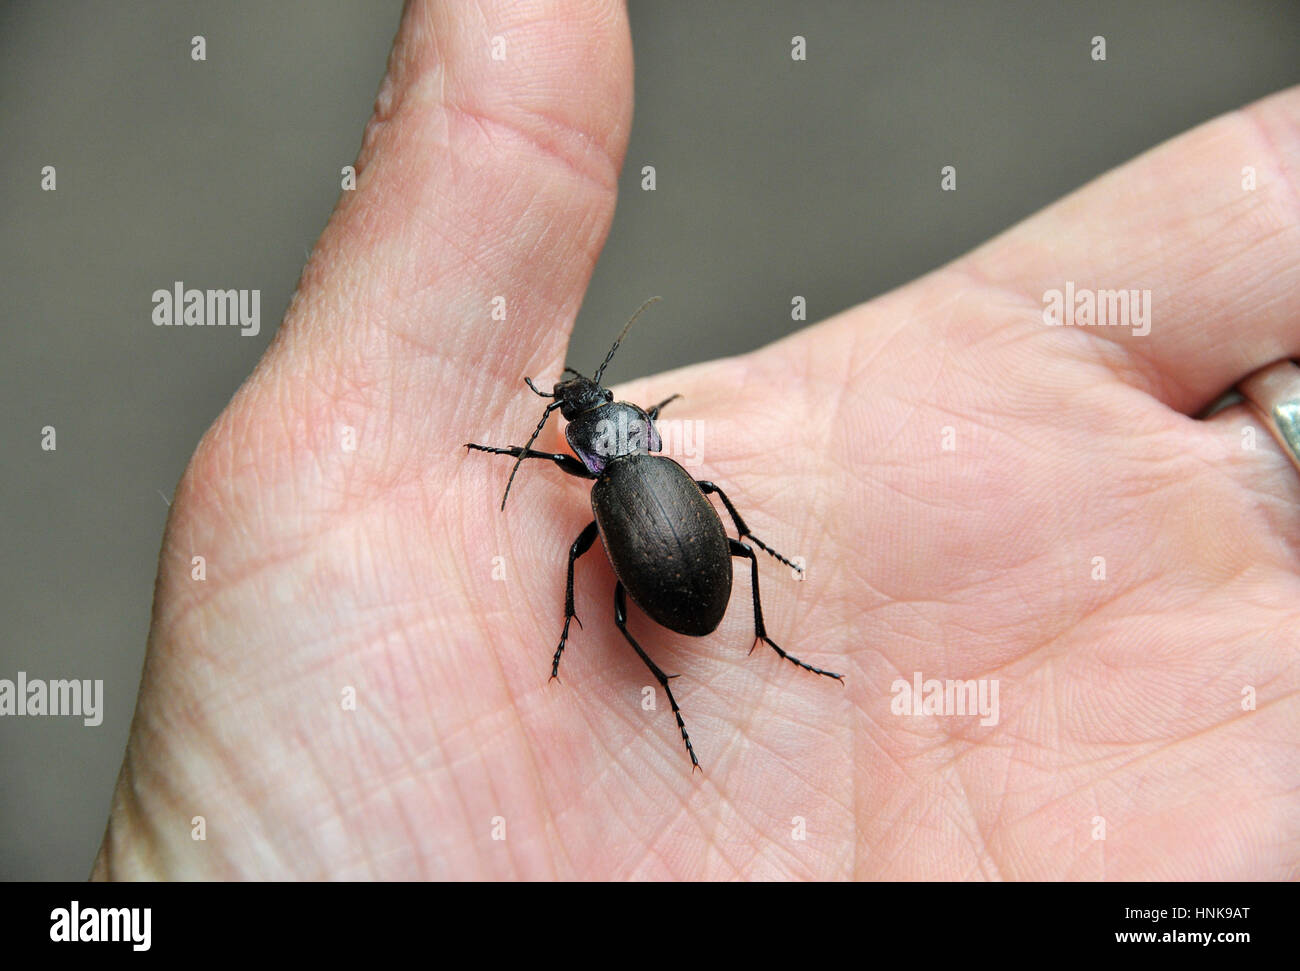 Un escarabajo rastreos de tierra violeta en la mano de una persona Foto de stock